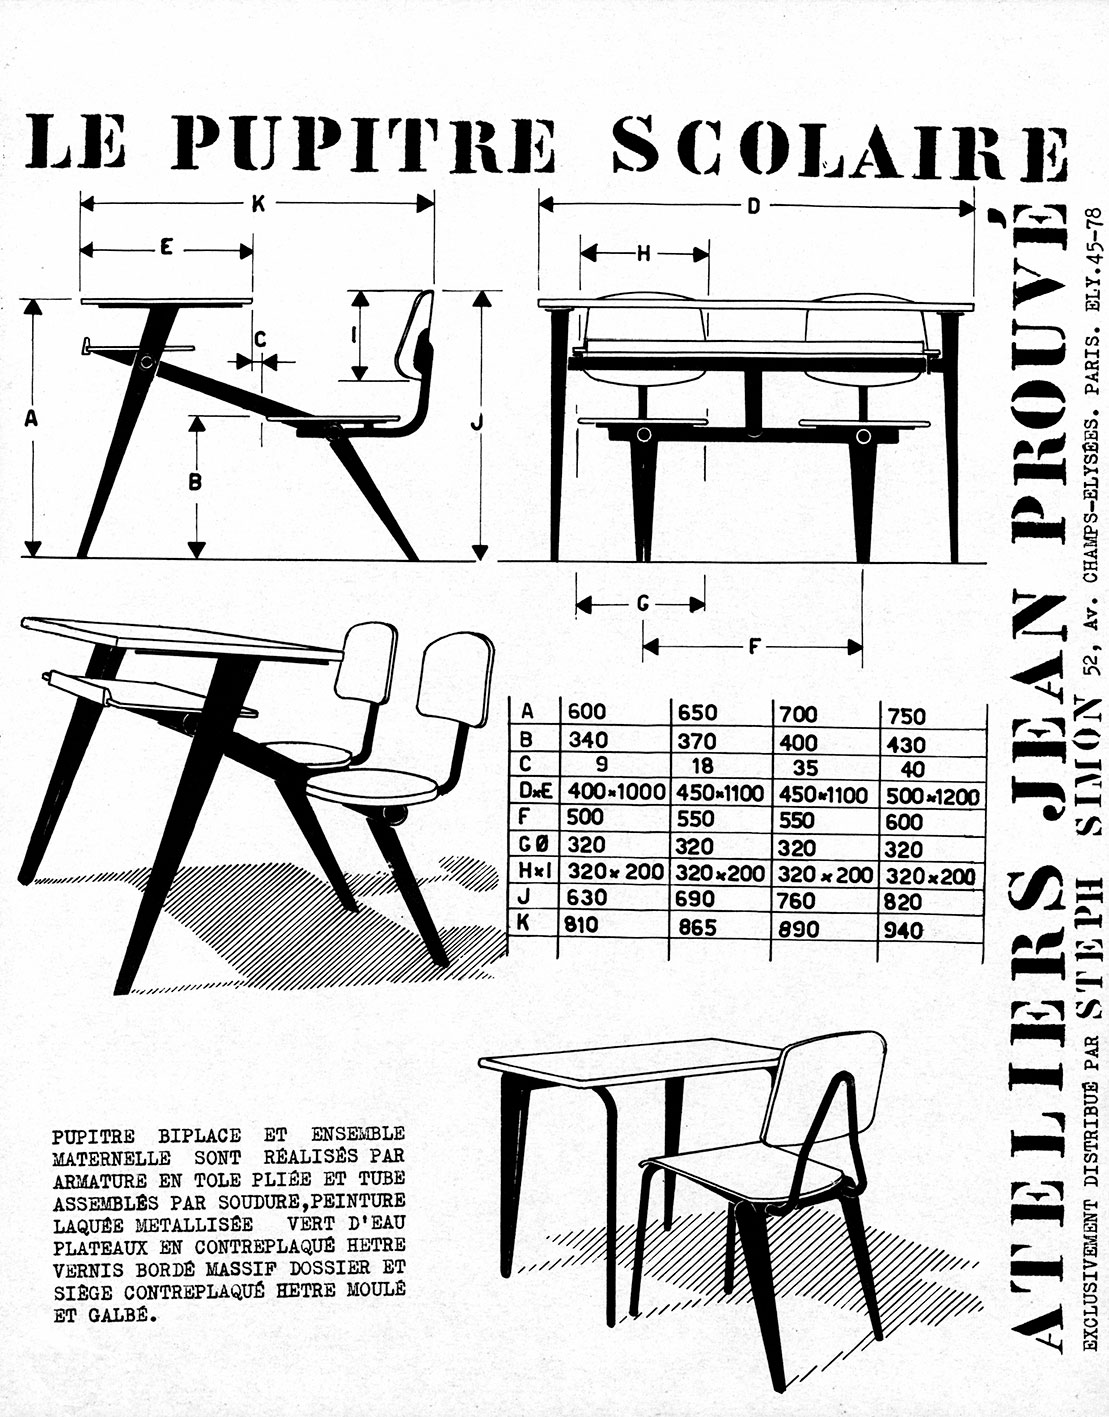 “Le pupitre scolaire Ateliers Jean Prouvé”. Steph Simon presentation sheet, ca. 1953.